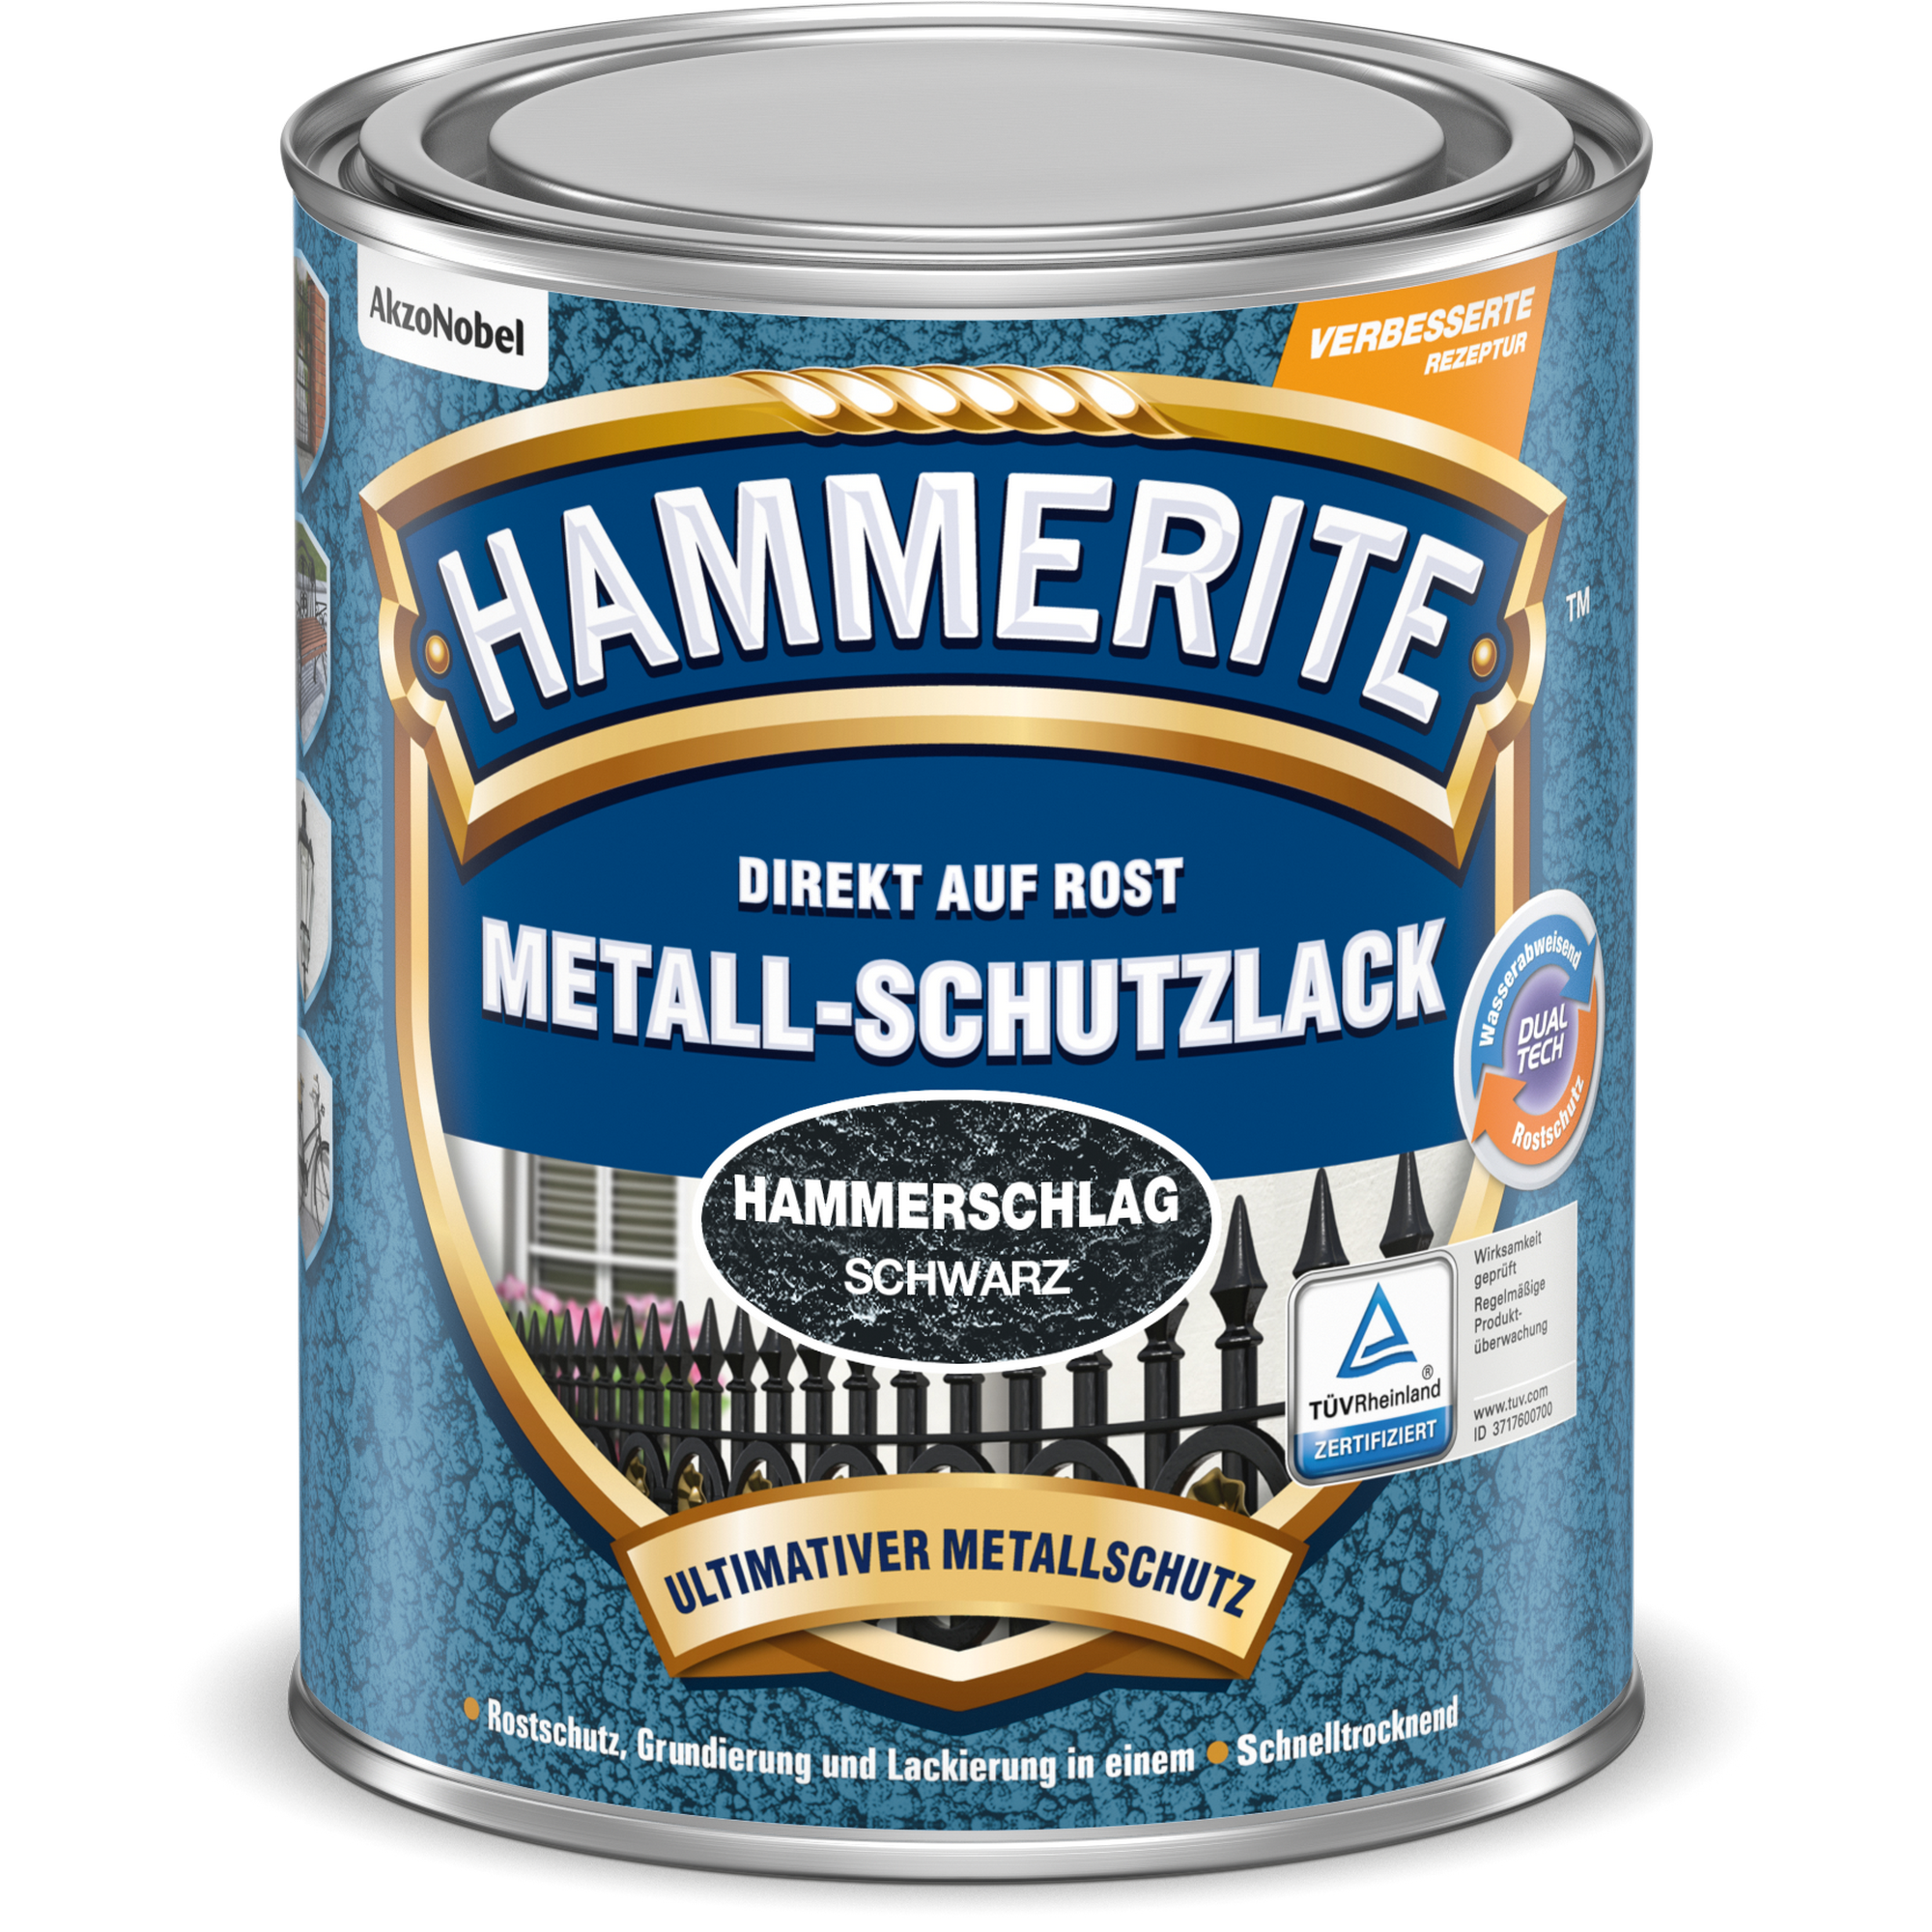 Metallschutzlack Hammerschlag-Effekt schwarz 250 ml + product video